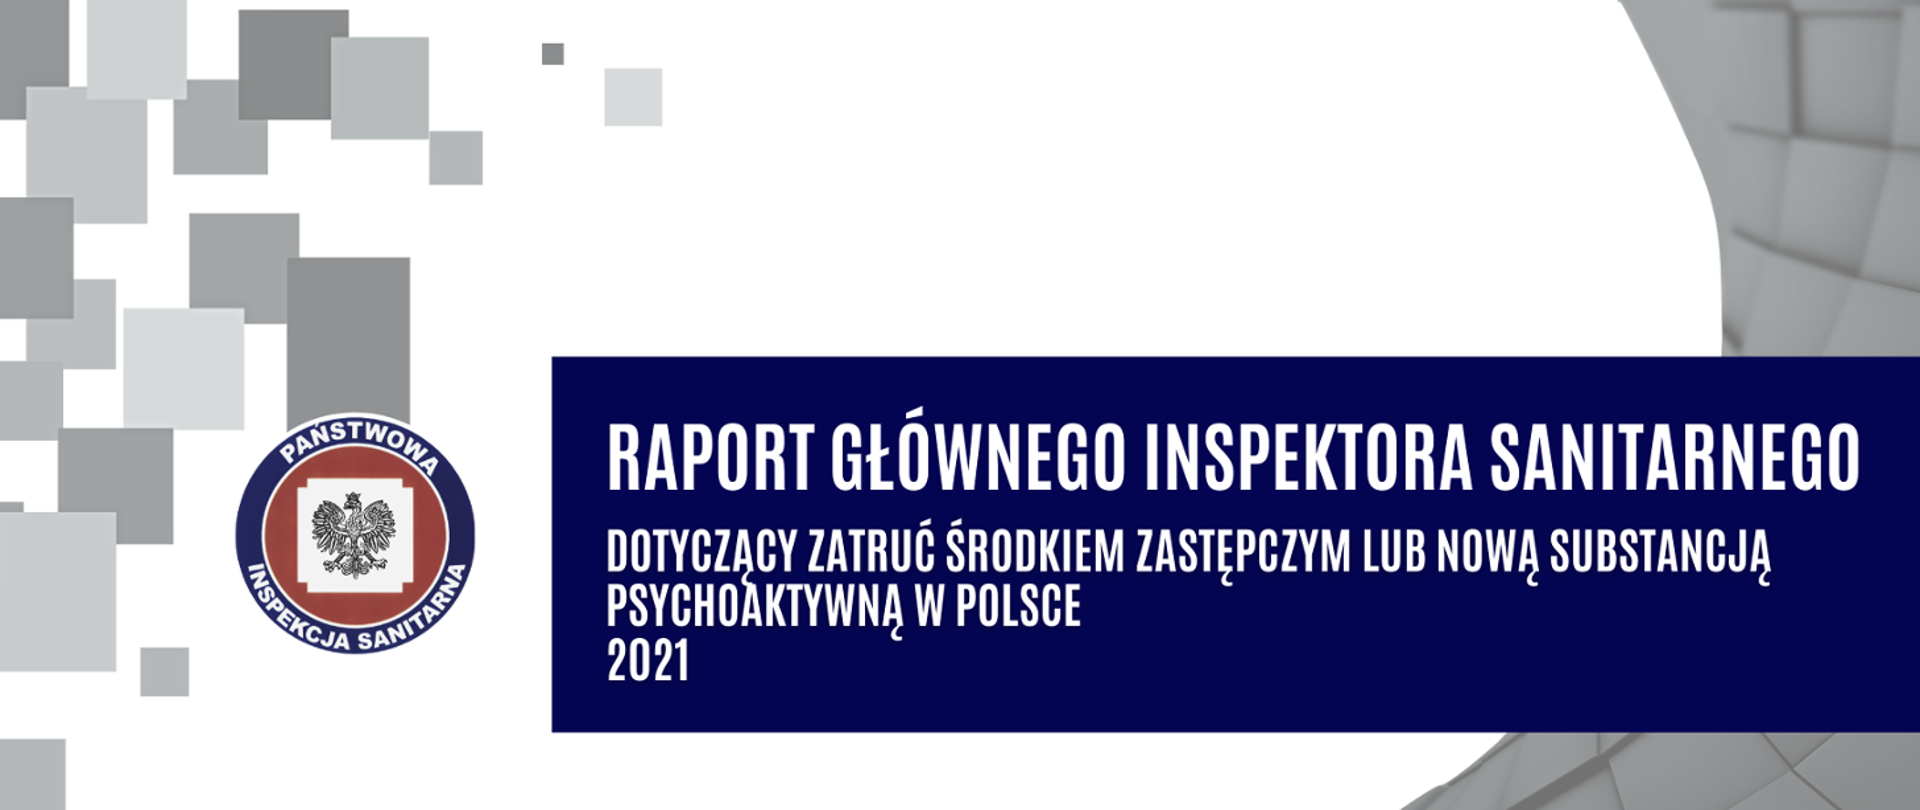 Napis: Raport dotyczący zatruć środkiem zastępczym lub nową substancją psychoaktywną za 2021 rok, po lewej logo PIS